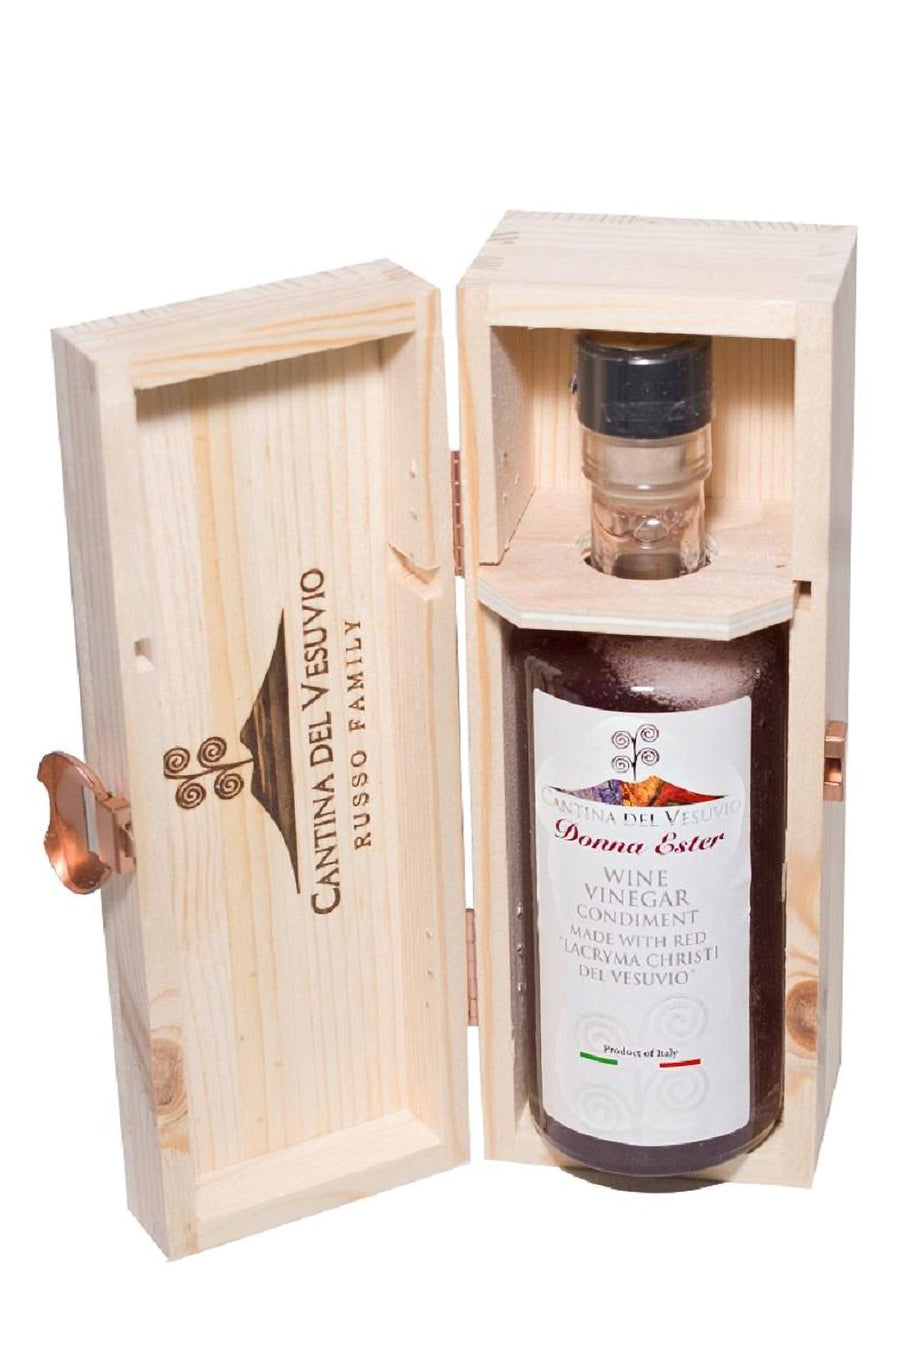 Wine Vinegar Condiment from Red Vesuvio Lacryma Christi DOC 